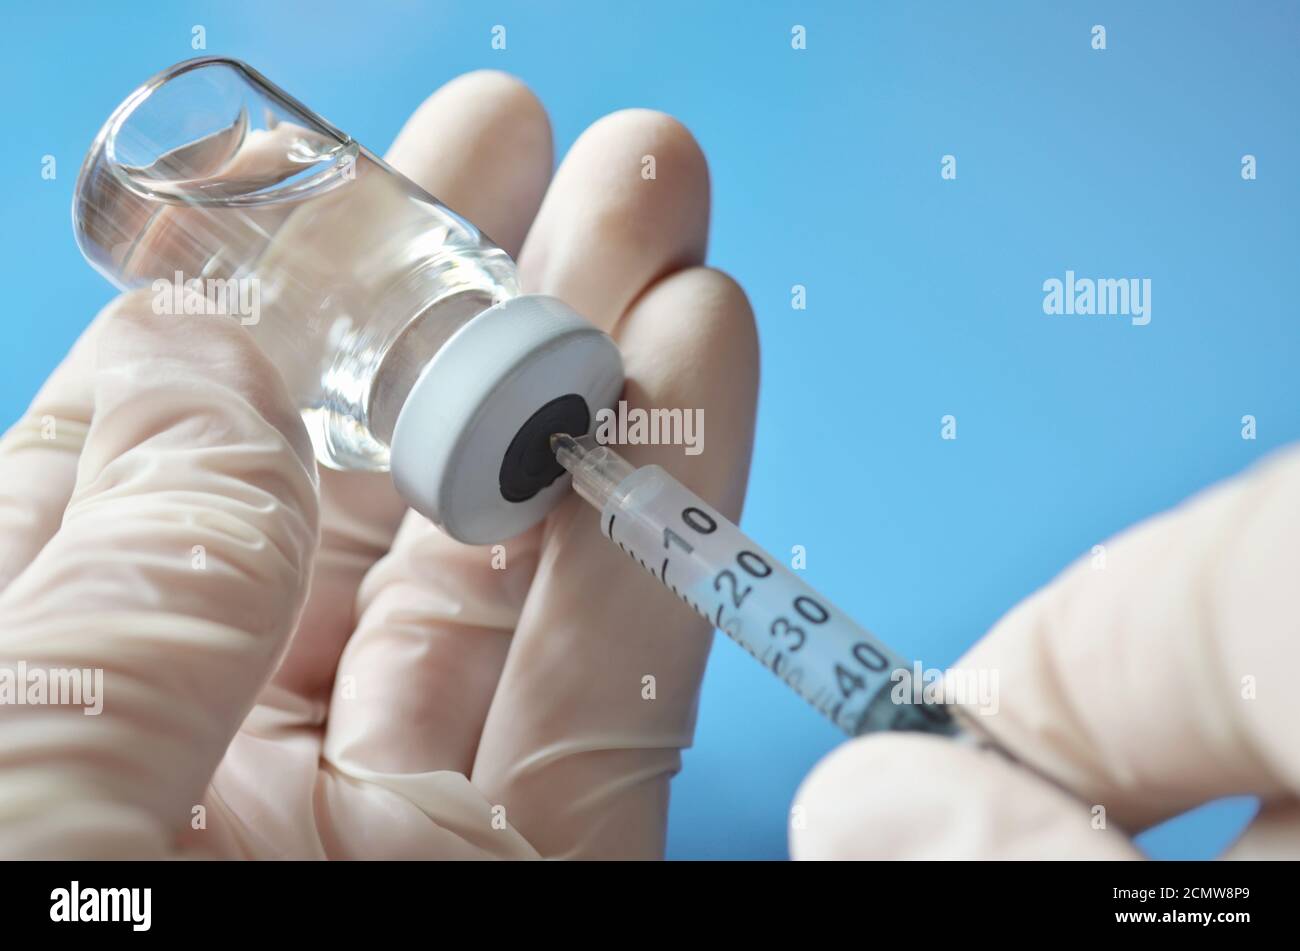 Un profesional médico en guantes de goma extrae una dosis de medicamento de un vial médico utilizando una jeringa desechable sobre un fondo azul claro. Foto de stock